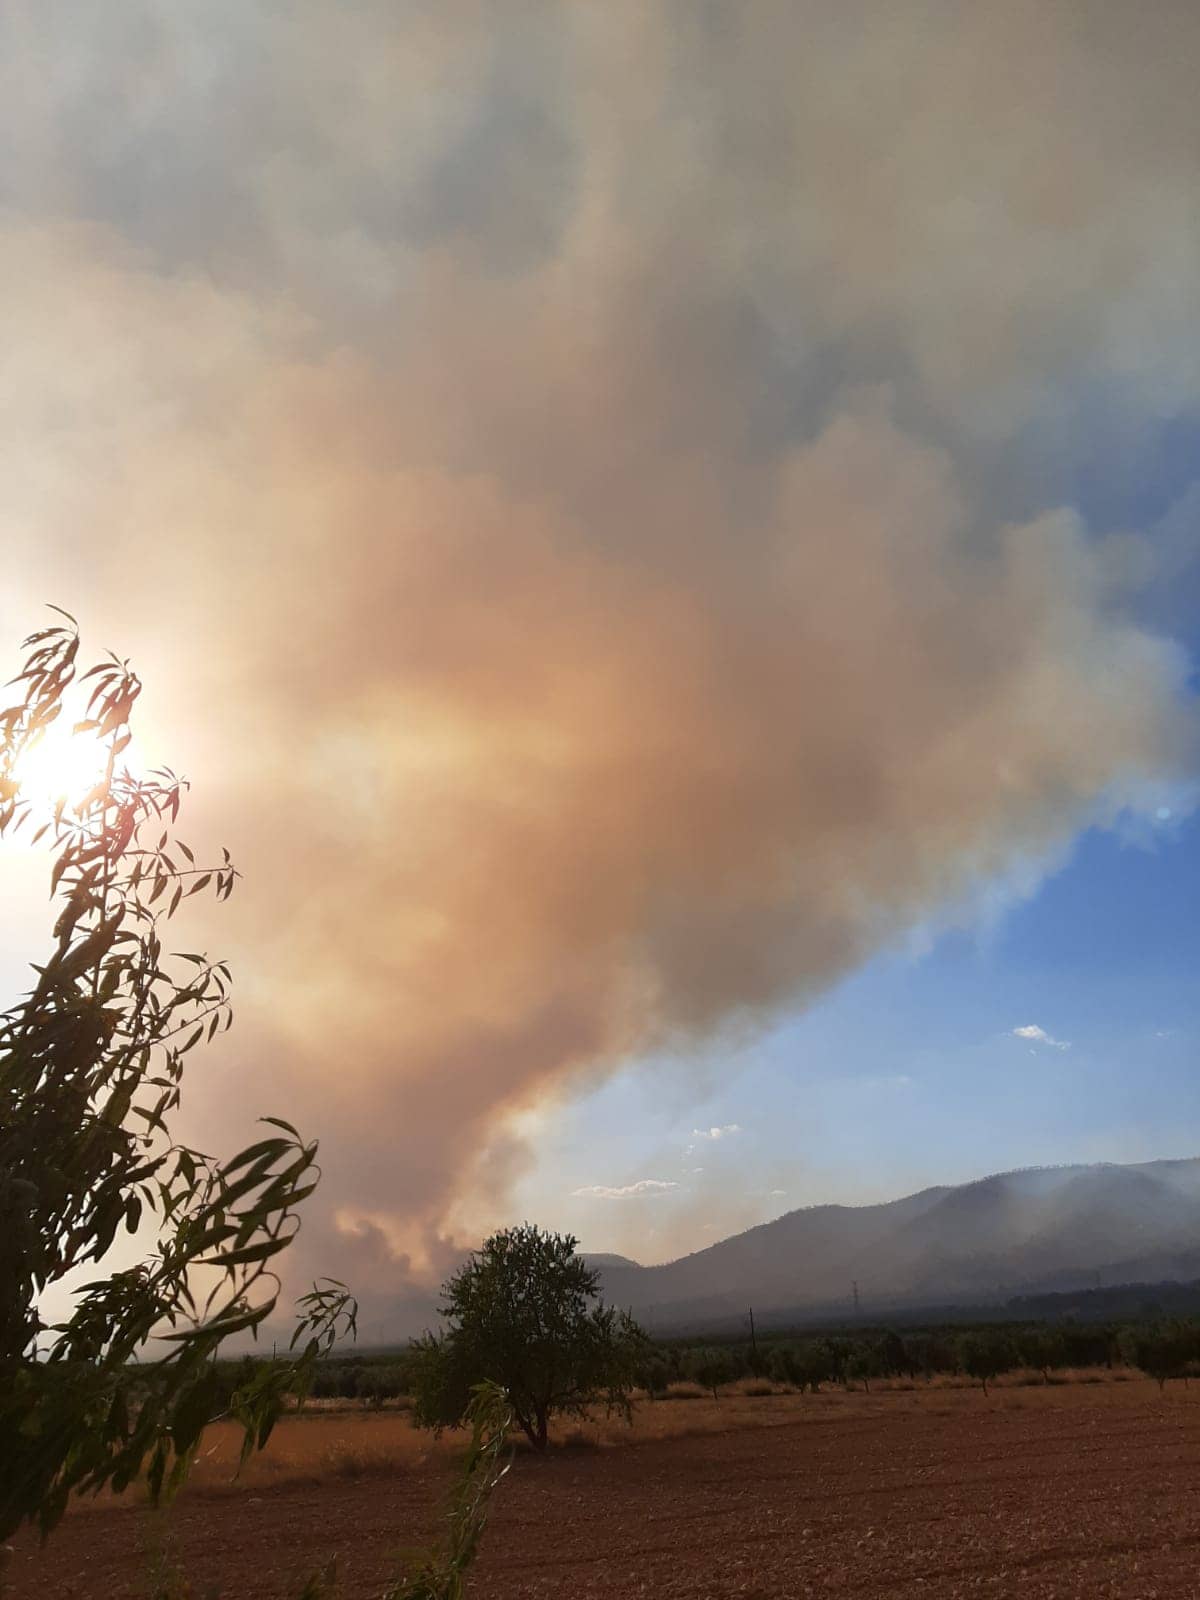 Unas 500 hectáreas de masa forestal podrían haber ardido en el incendio de Beneixama que sigue descontrolado